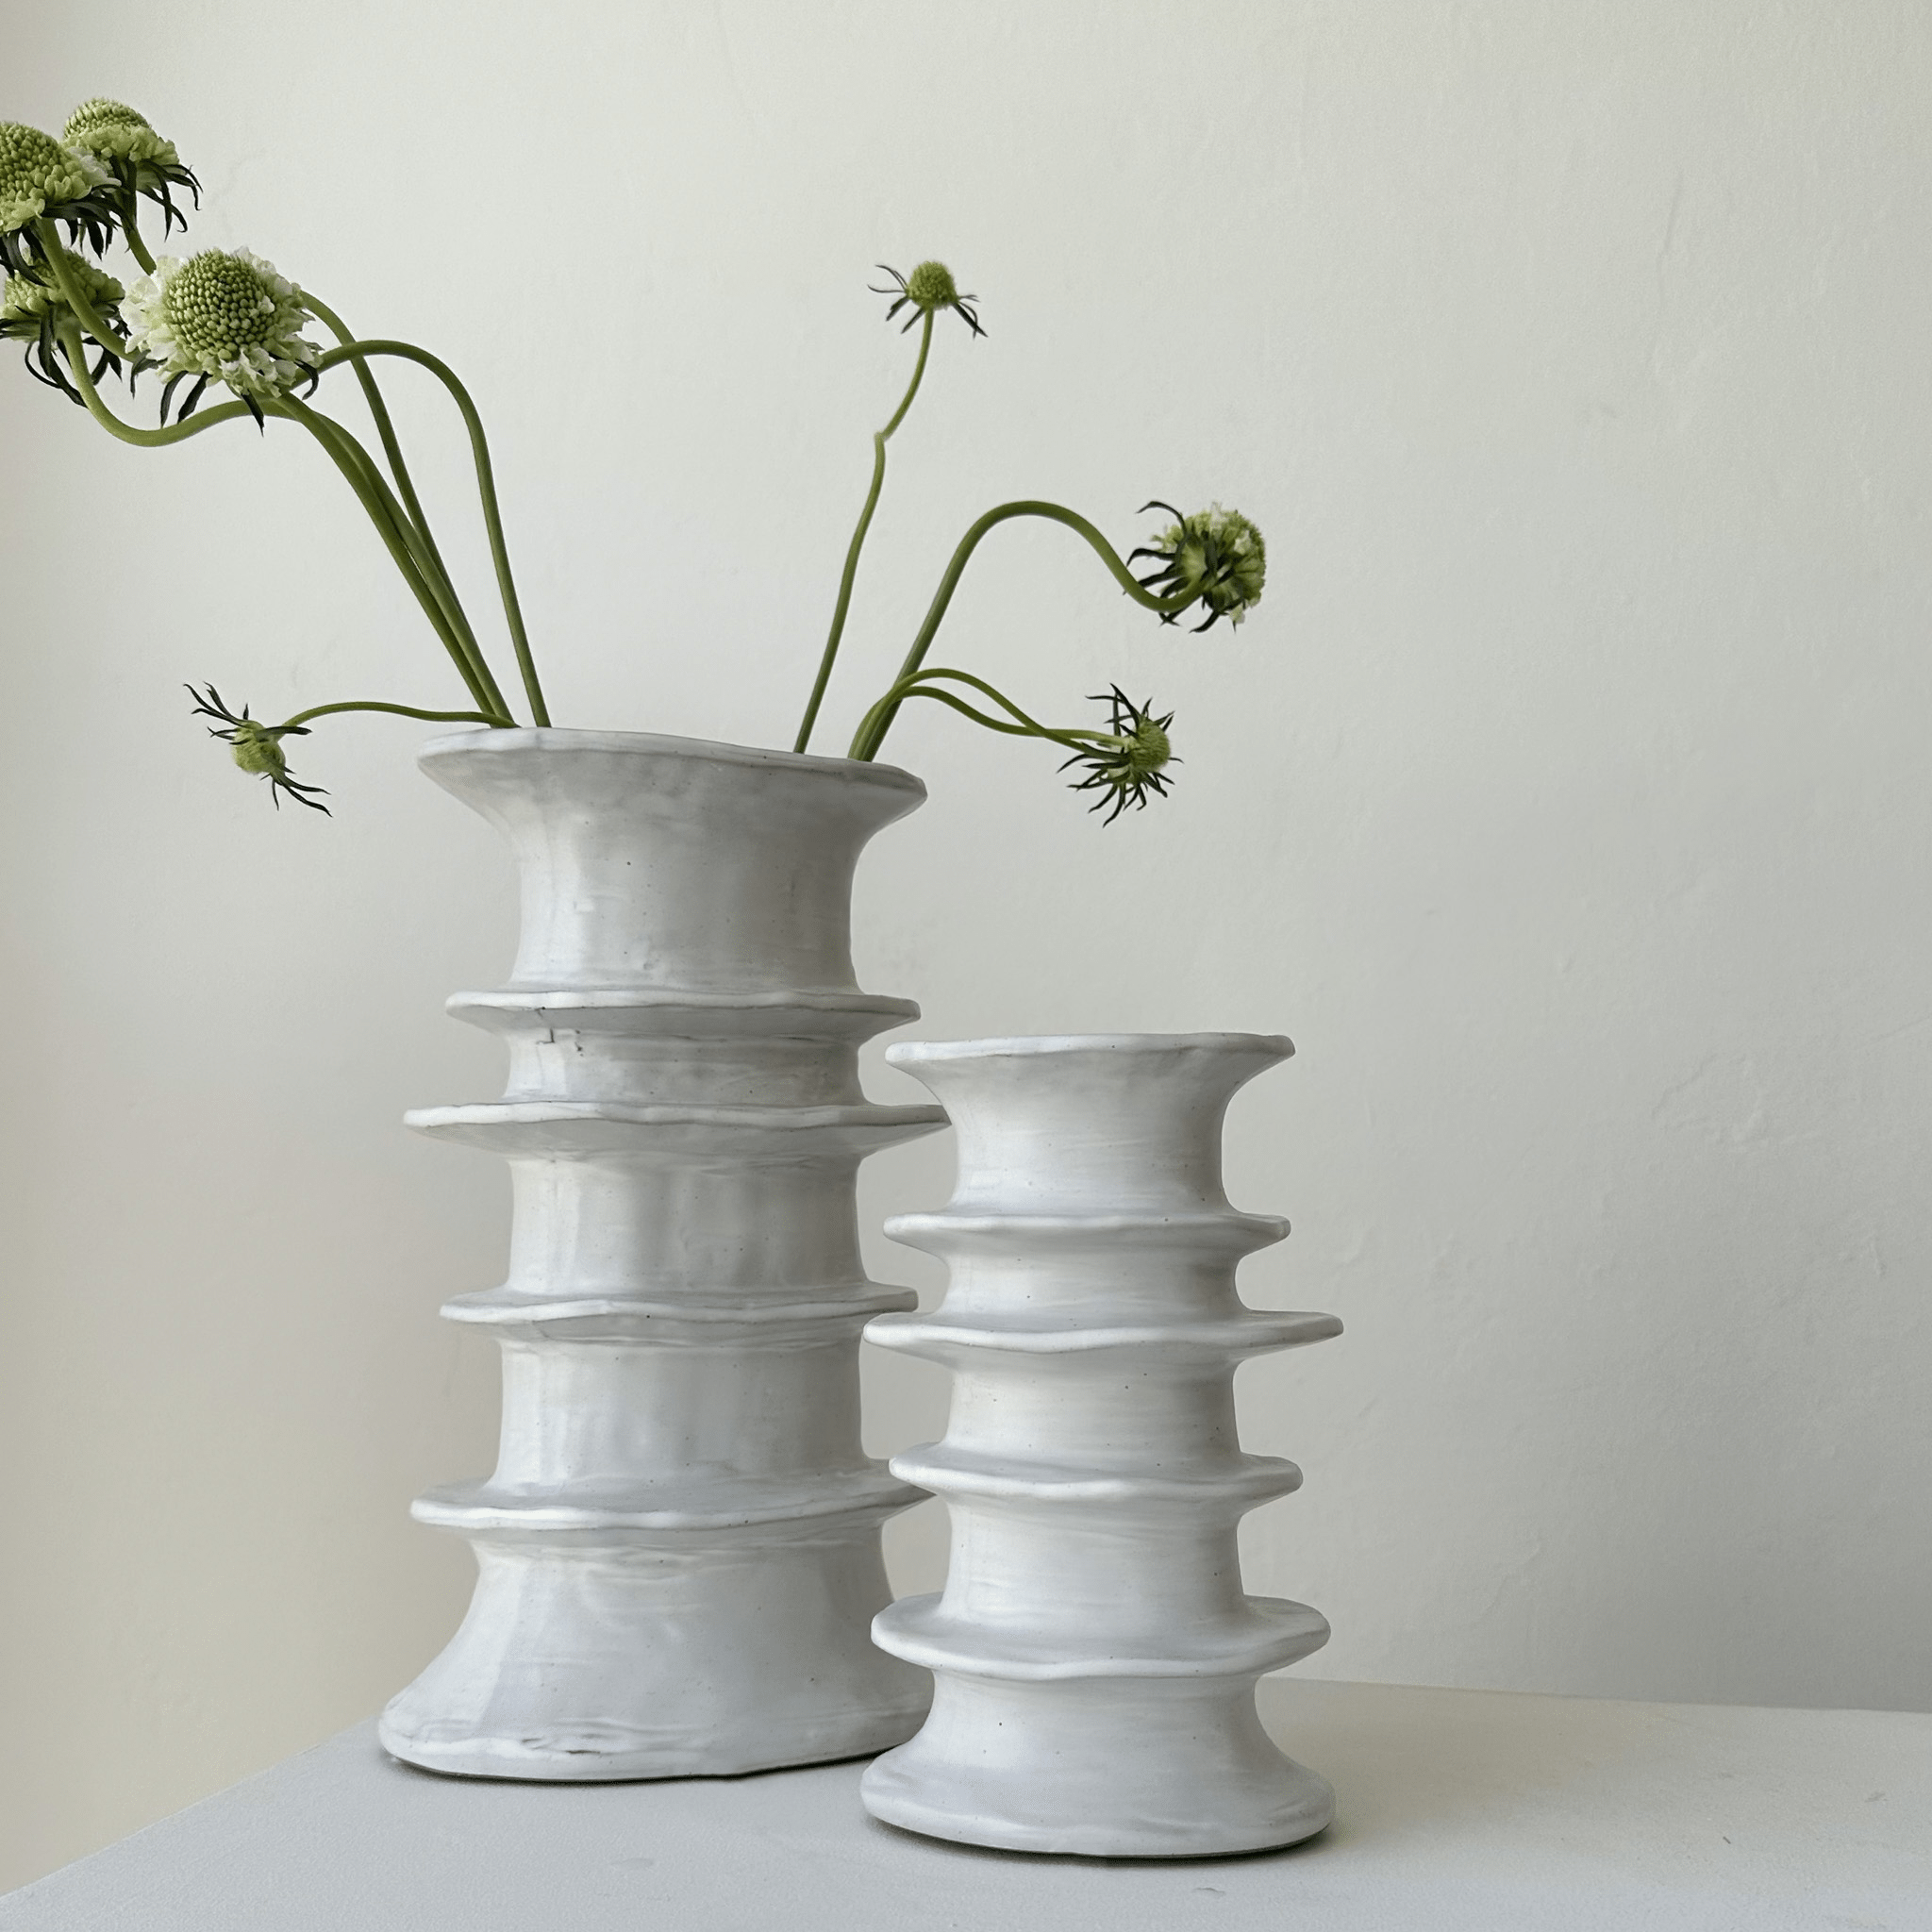 serax Decor The Billy Vase by Marie Michielssen